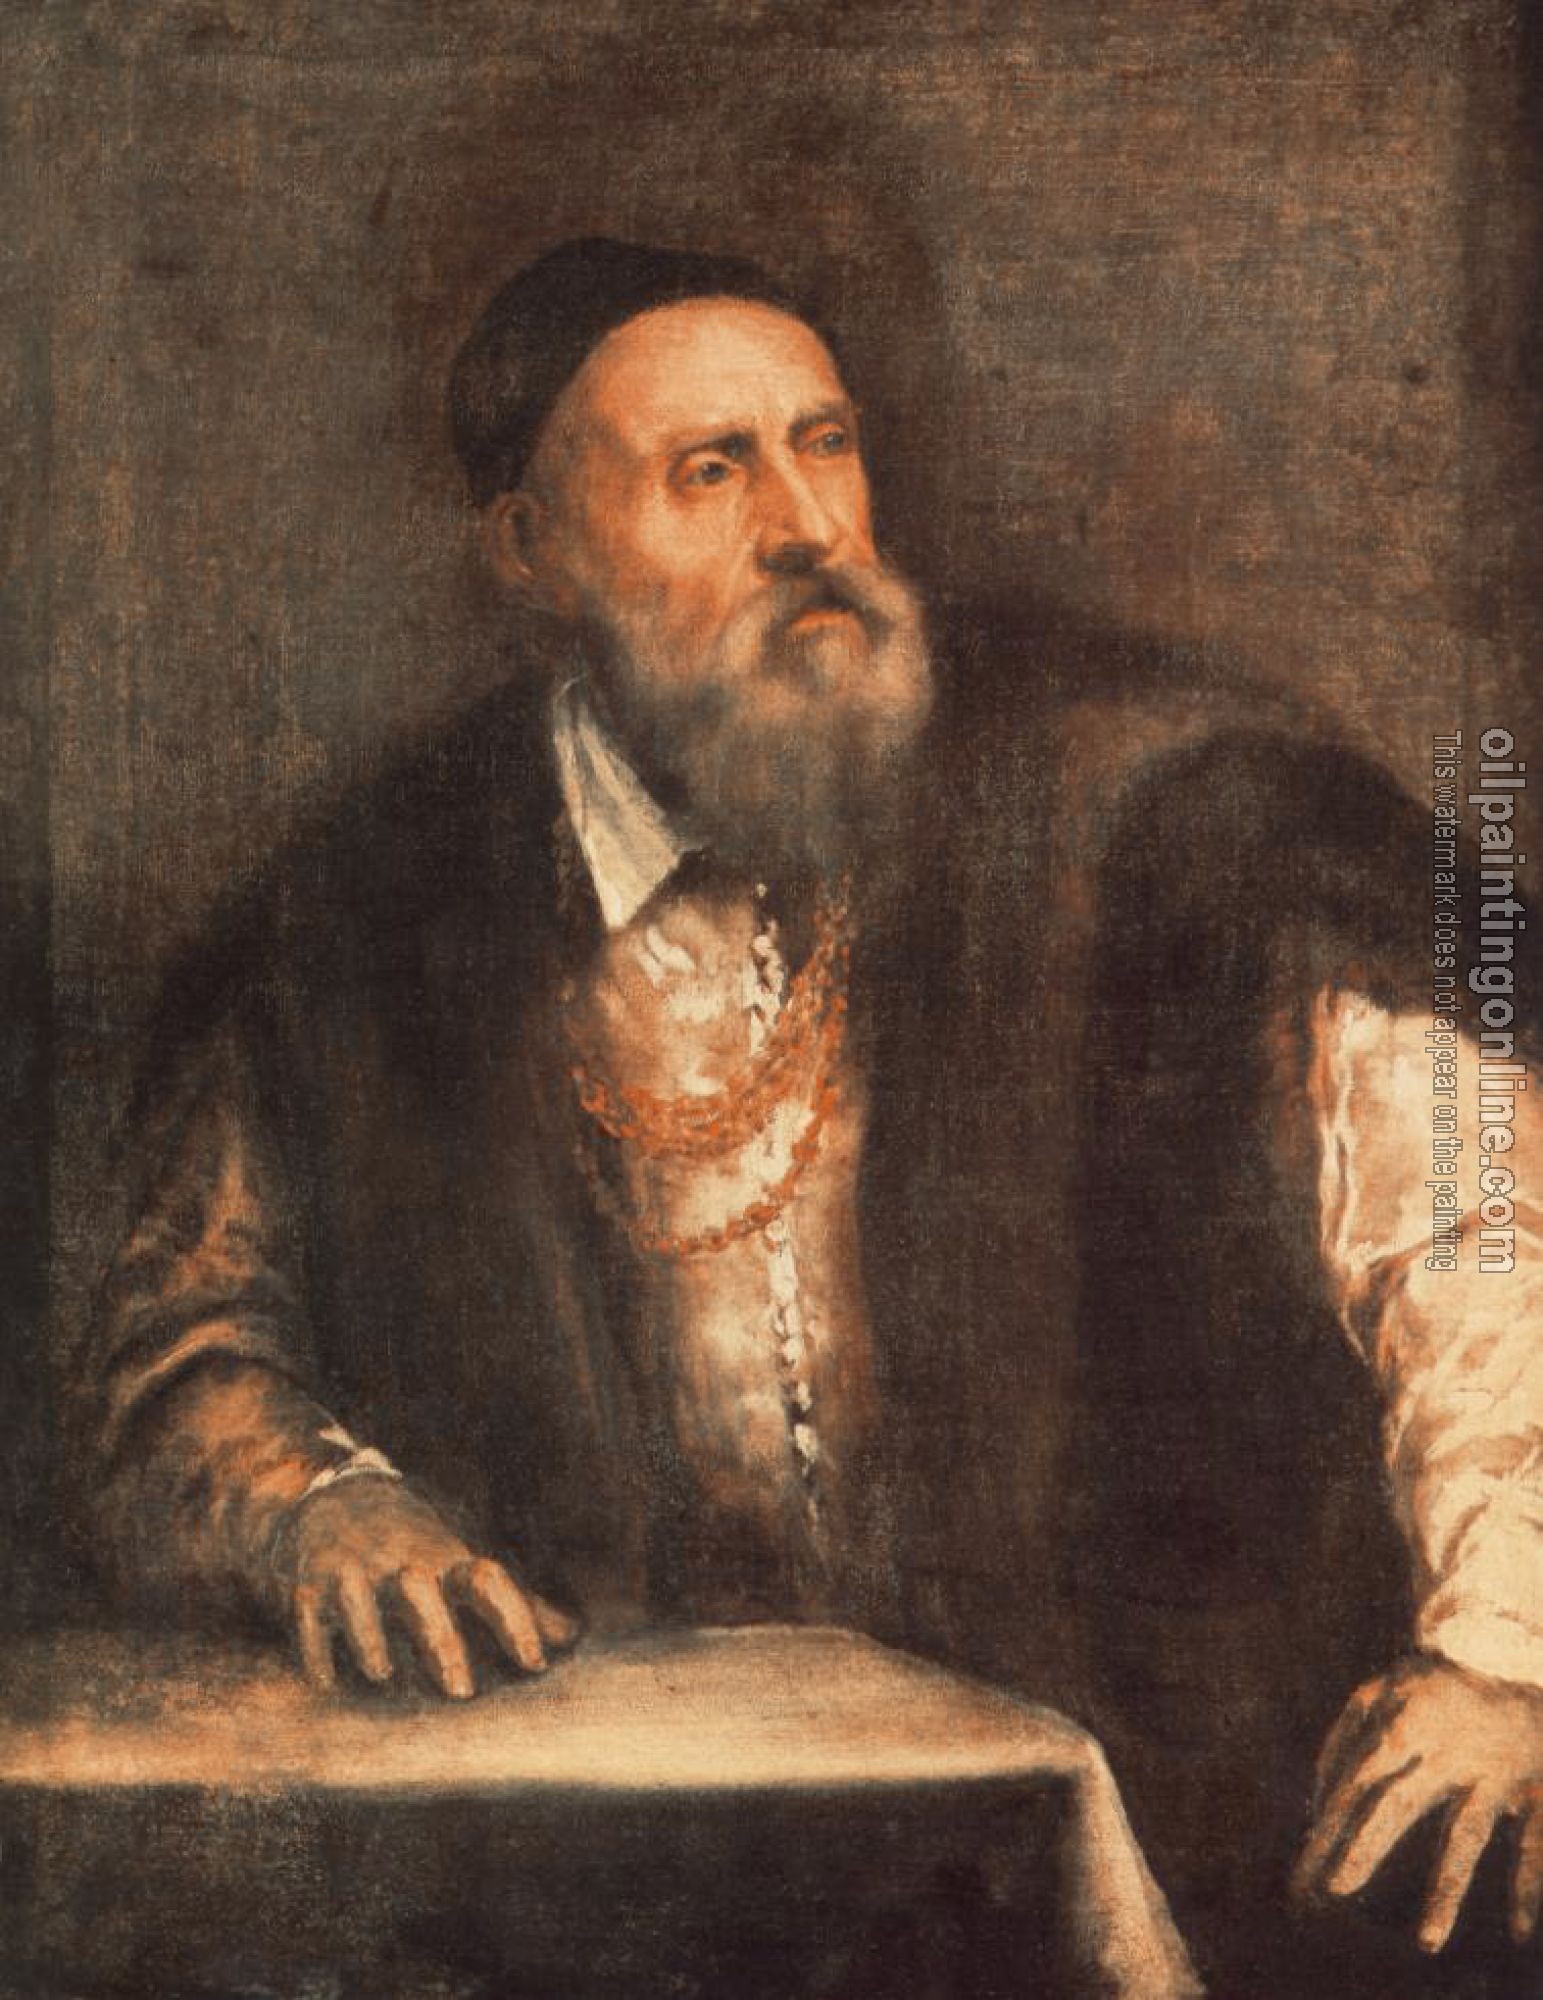 Titian - Self Portrait